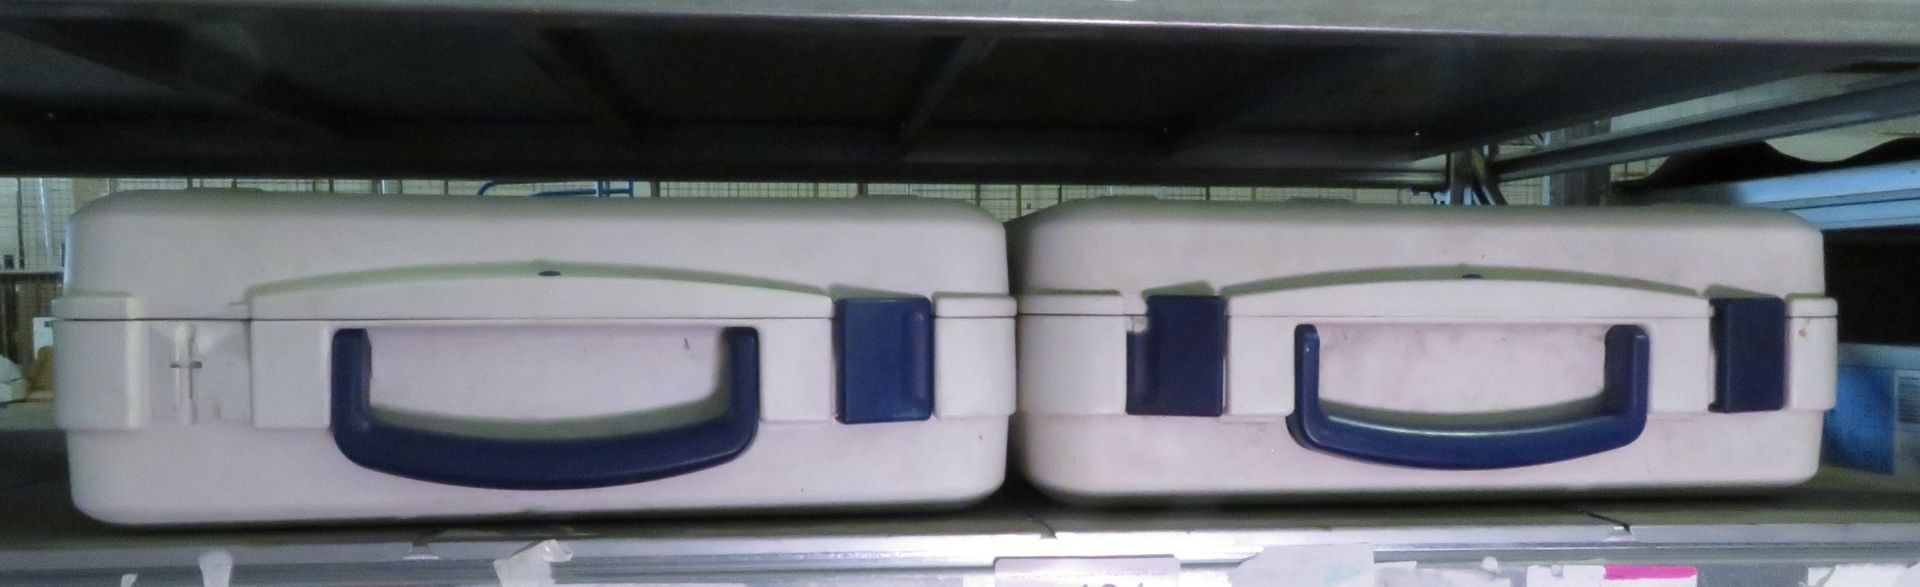 2x Hofbauer Megabag Double Wall Cases - W480 x D480 x H170mm